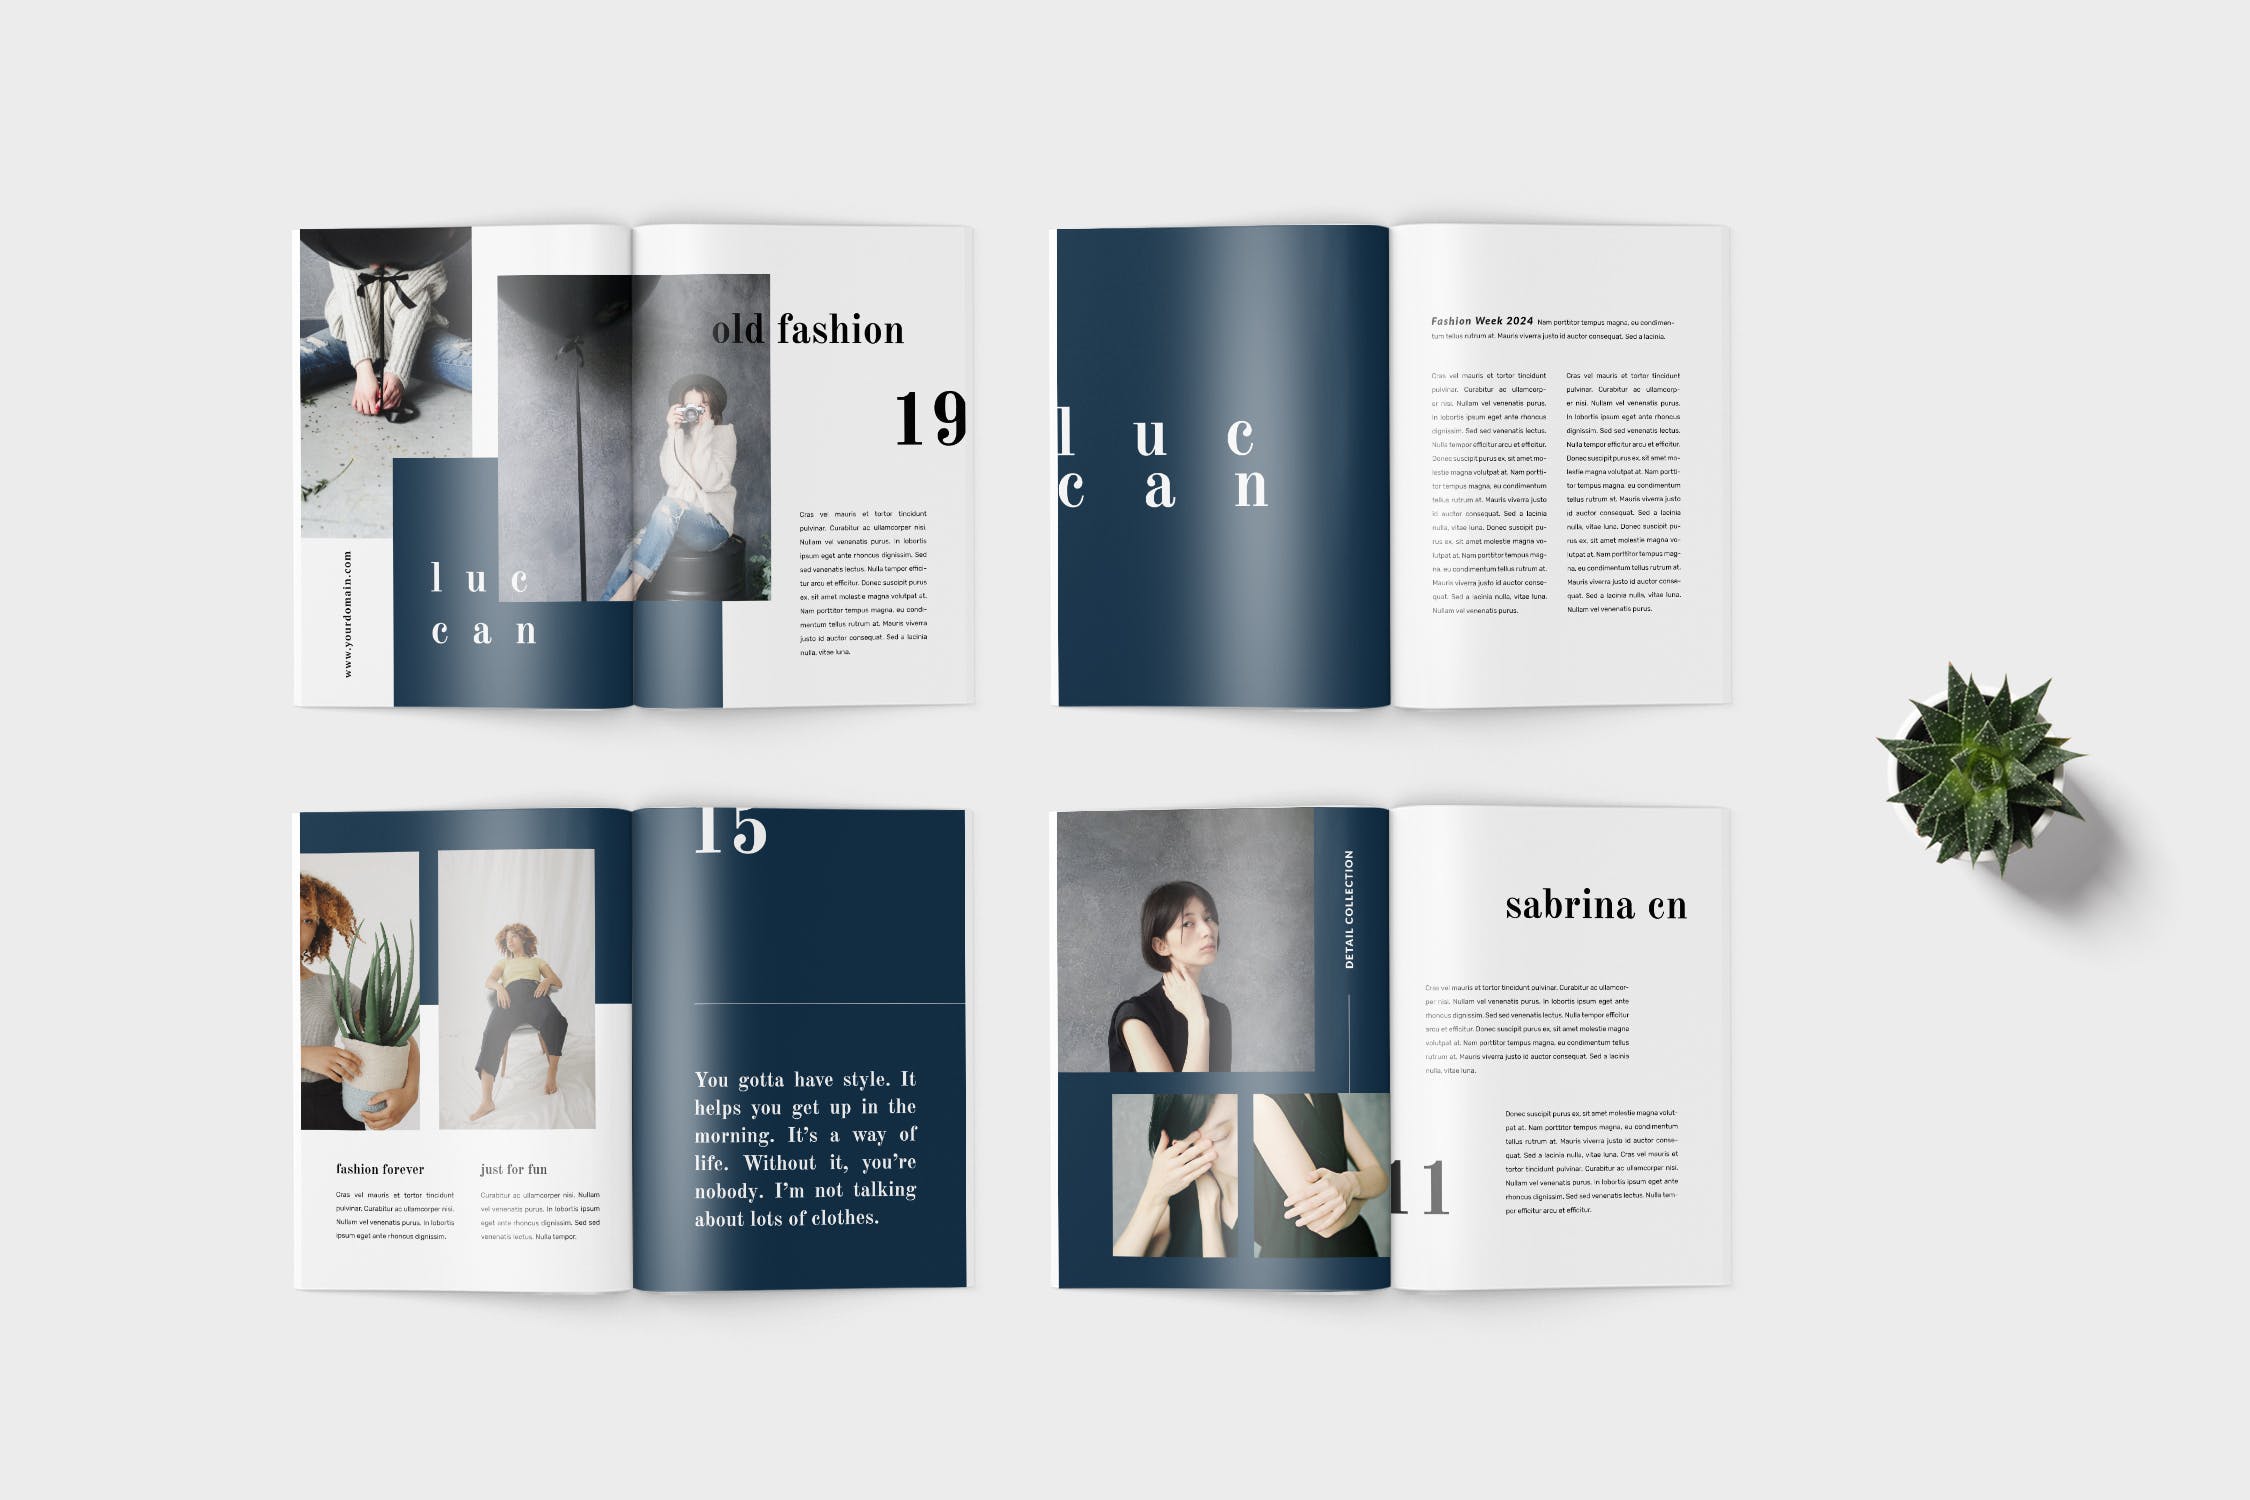 高端女性服装品牌产品蚂蚁素材精选目录设计模板 Luccan Fashion Lookbook Catalogue插图(3)